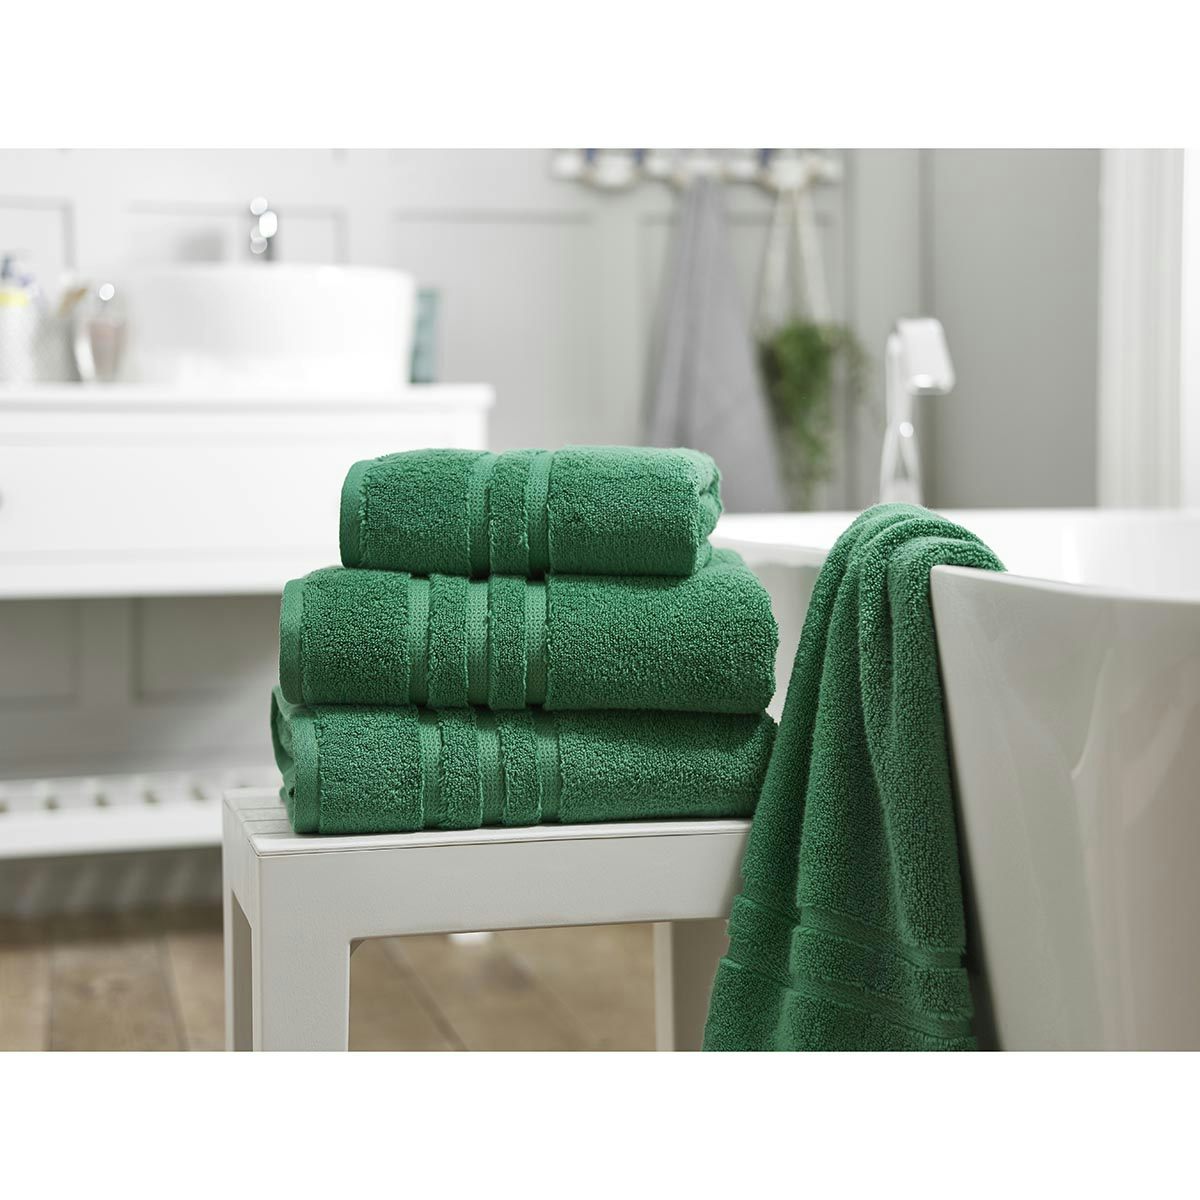 The Lyndon Company Chelsea zero twist 6 piece towel bale in bottle green